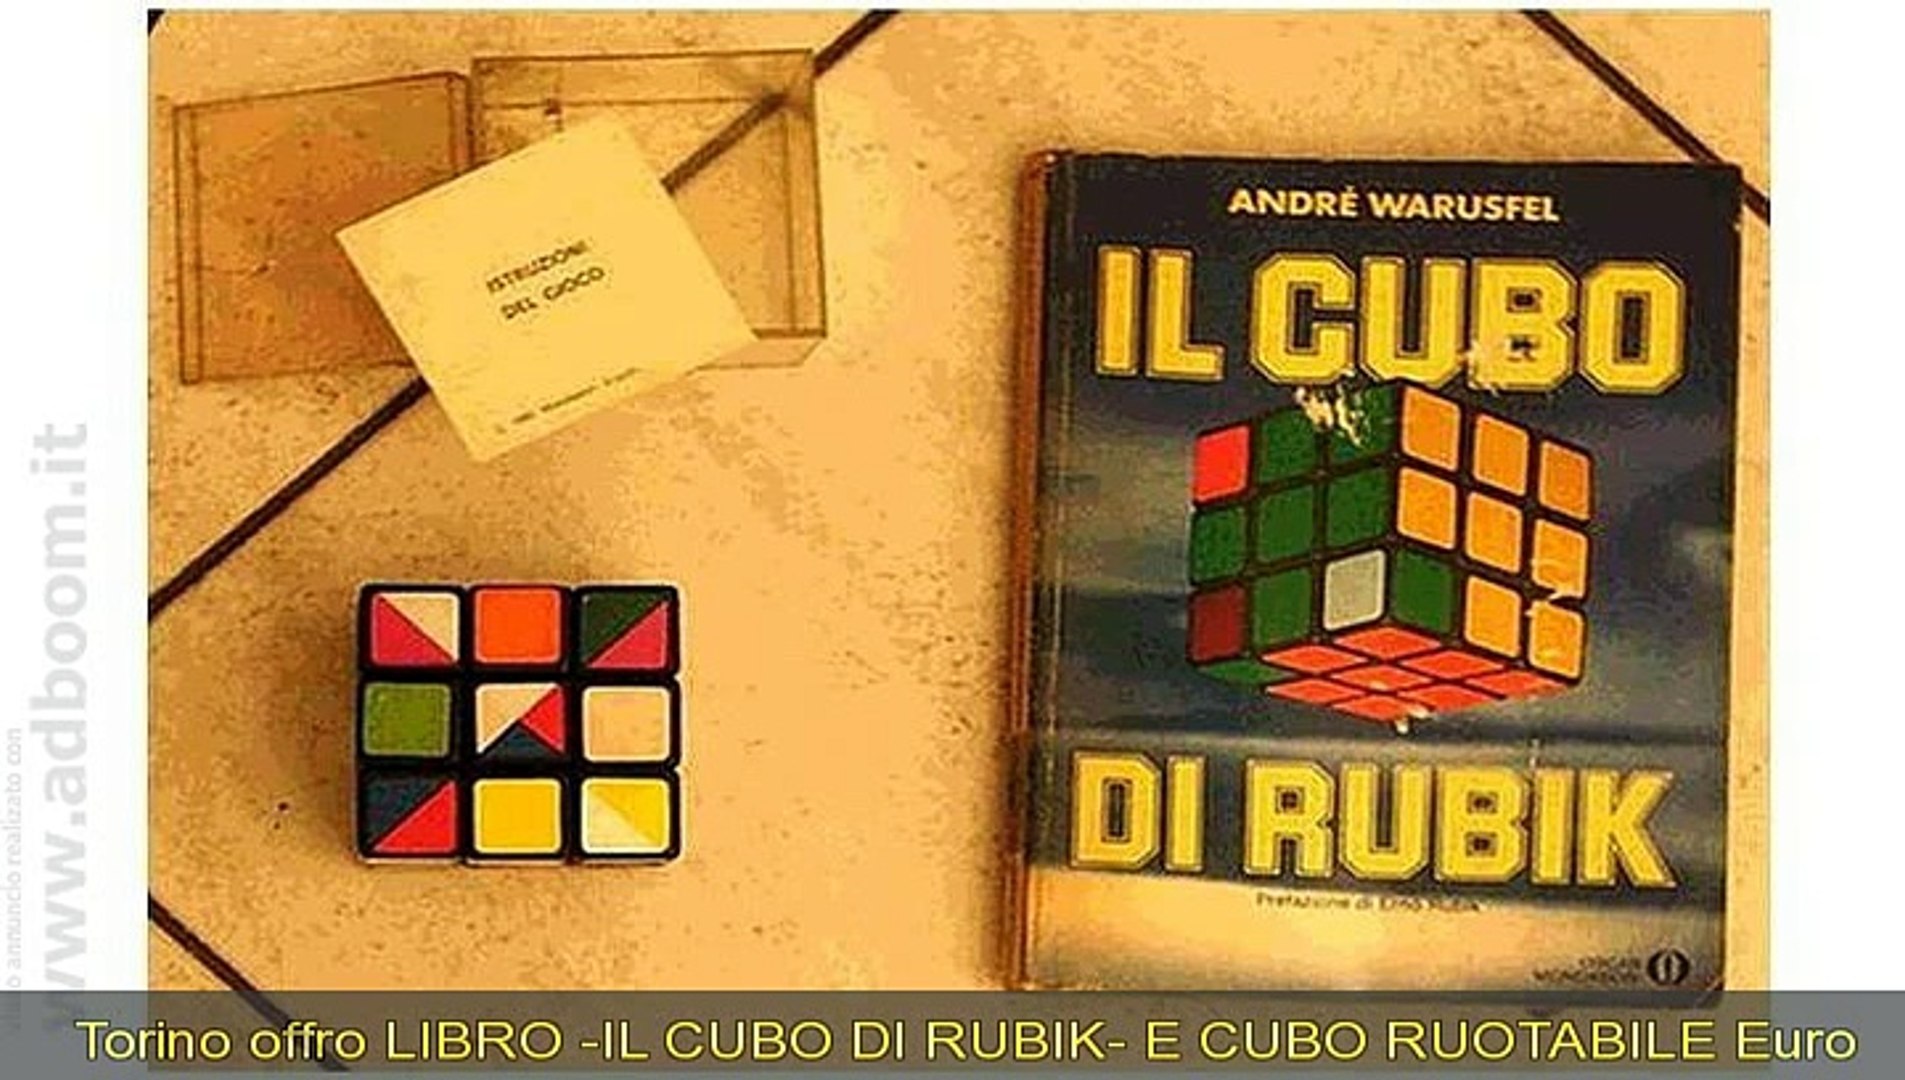 TORINO, LIBRO -IL CUBO DI RUBIK- E CUBO RUOTABILE EURO 10 - Video  Dailymotion